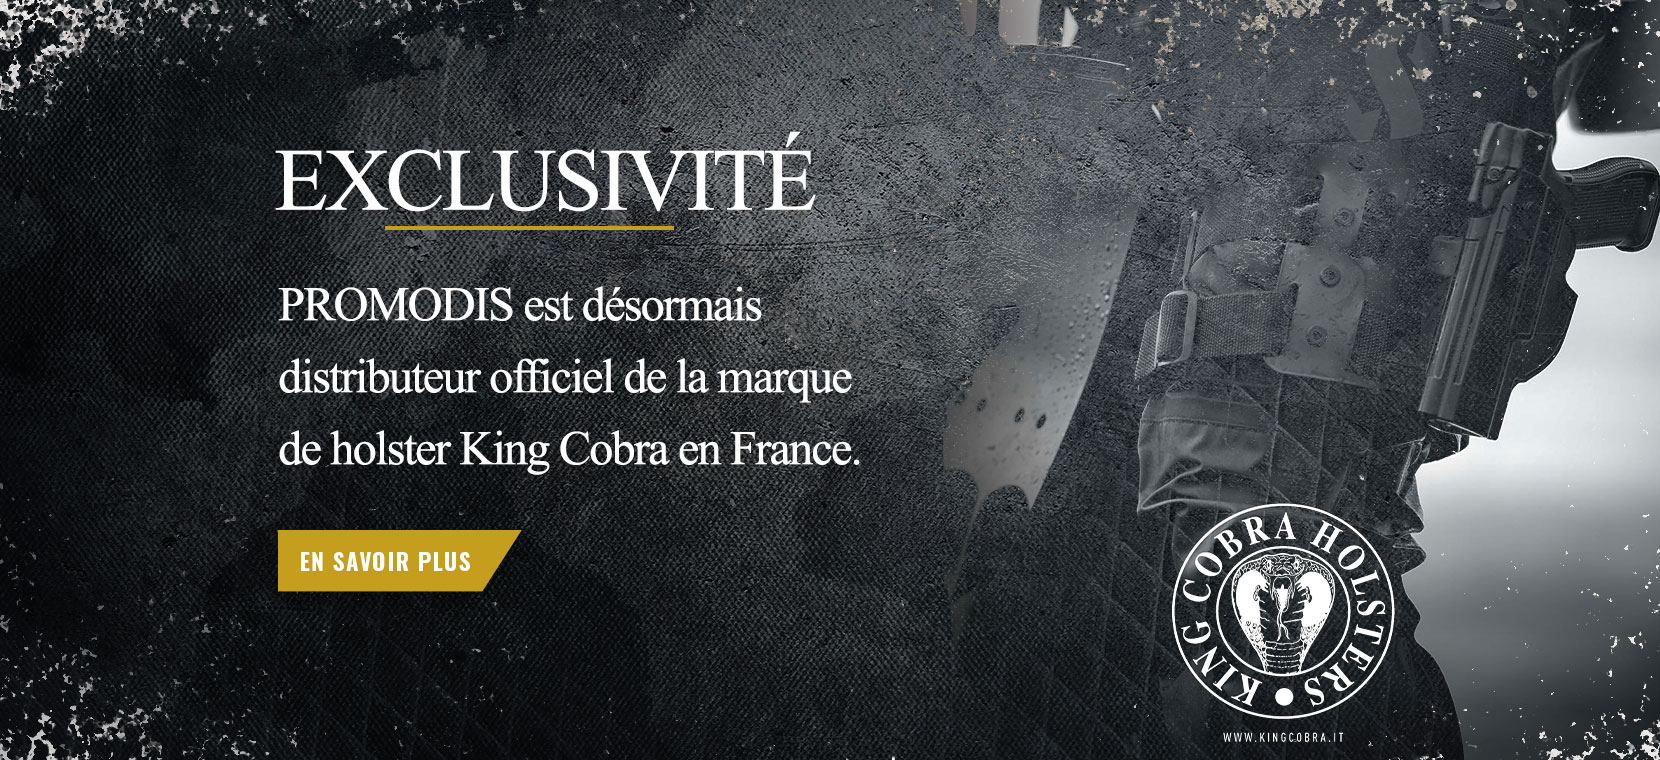 Promodis est désormais distributeur officiel de la marque Holster King Cobra en France 